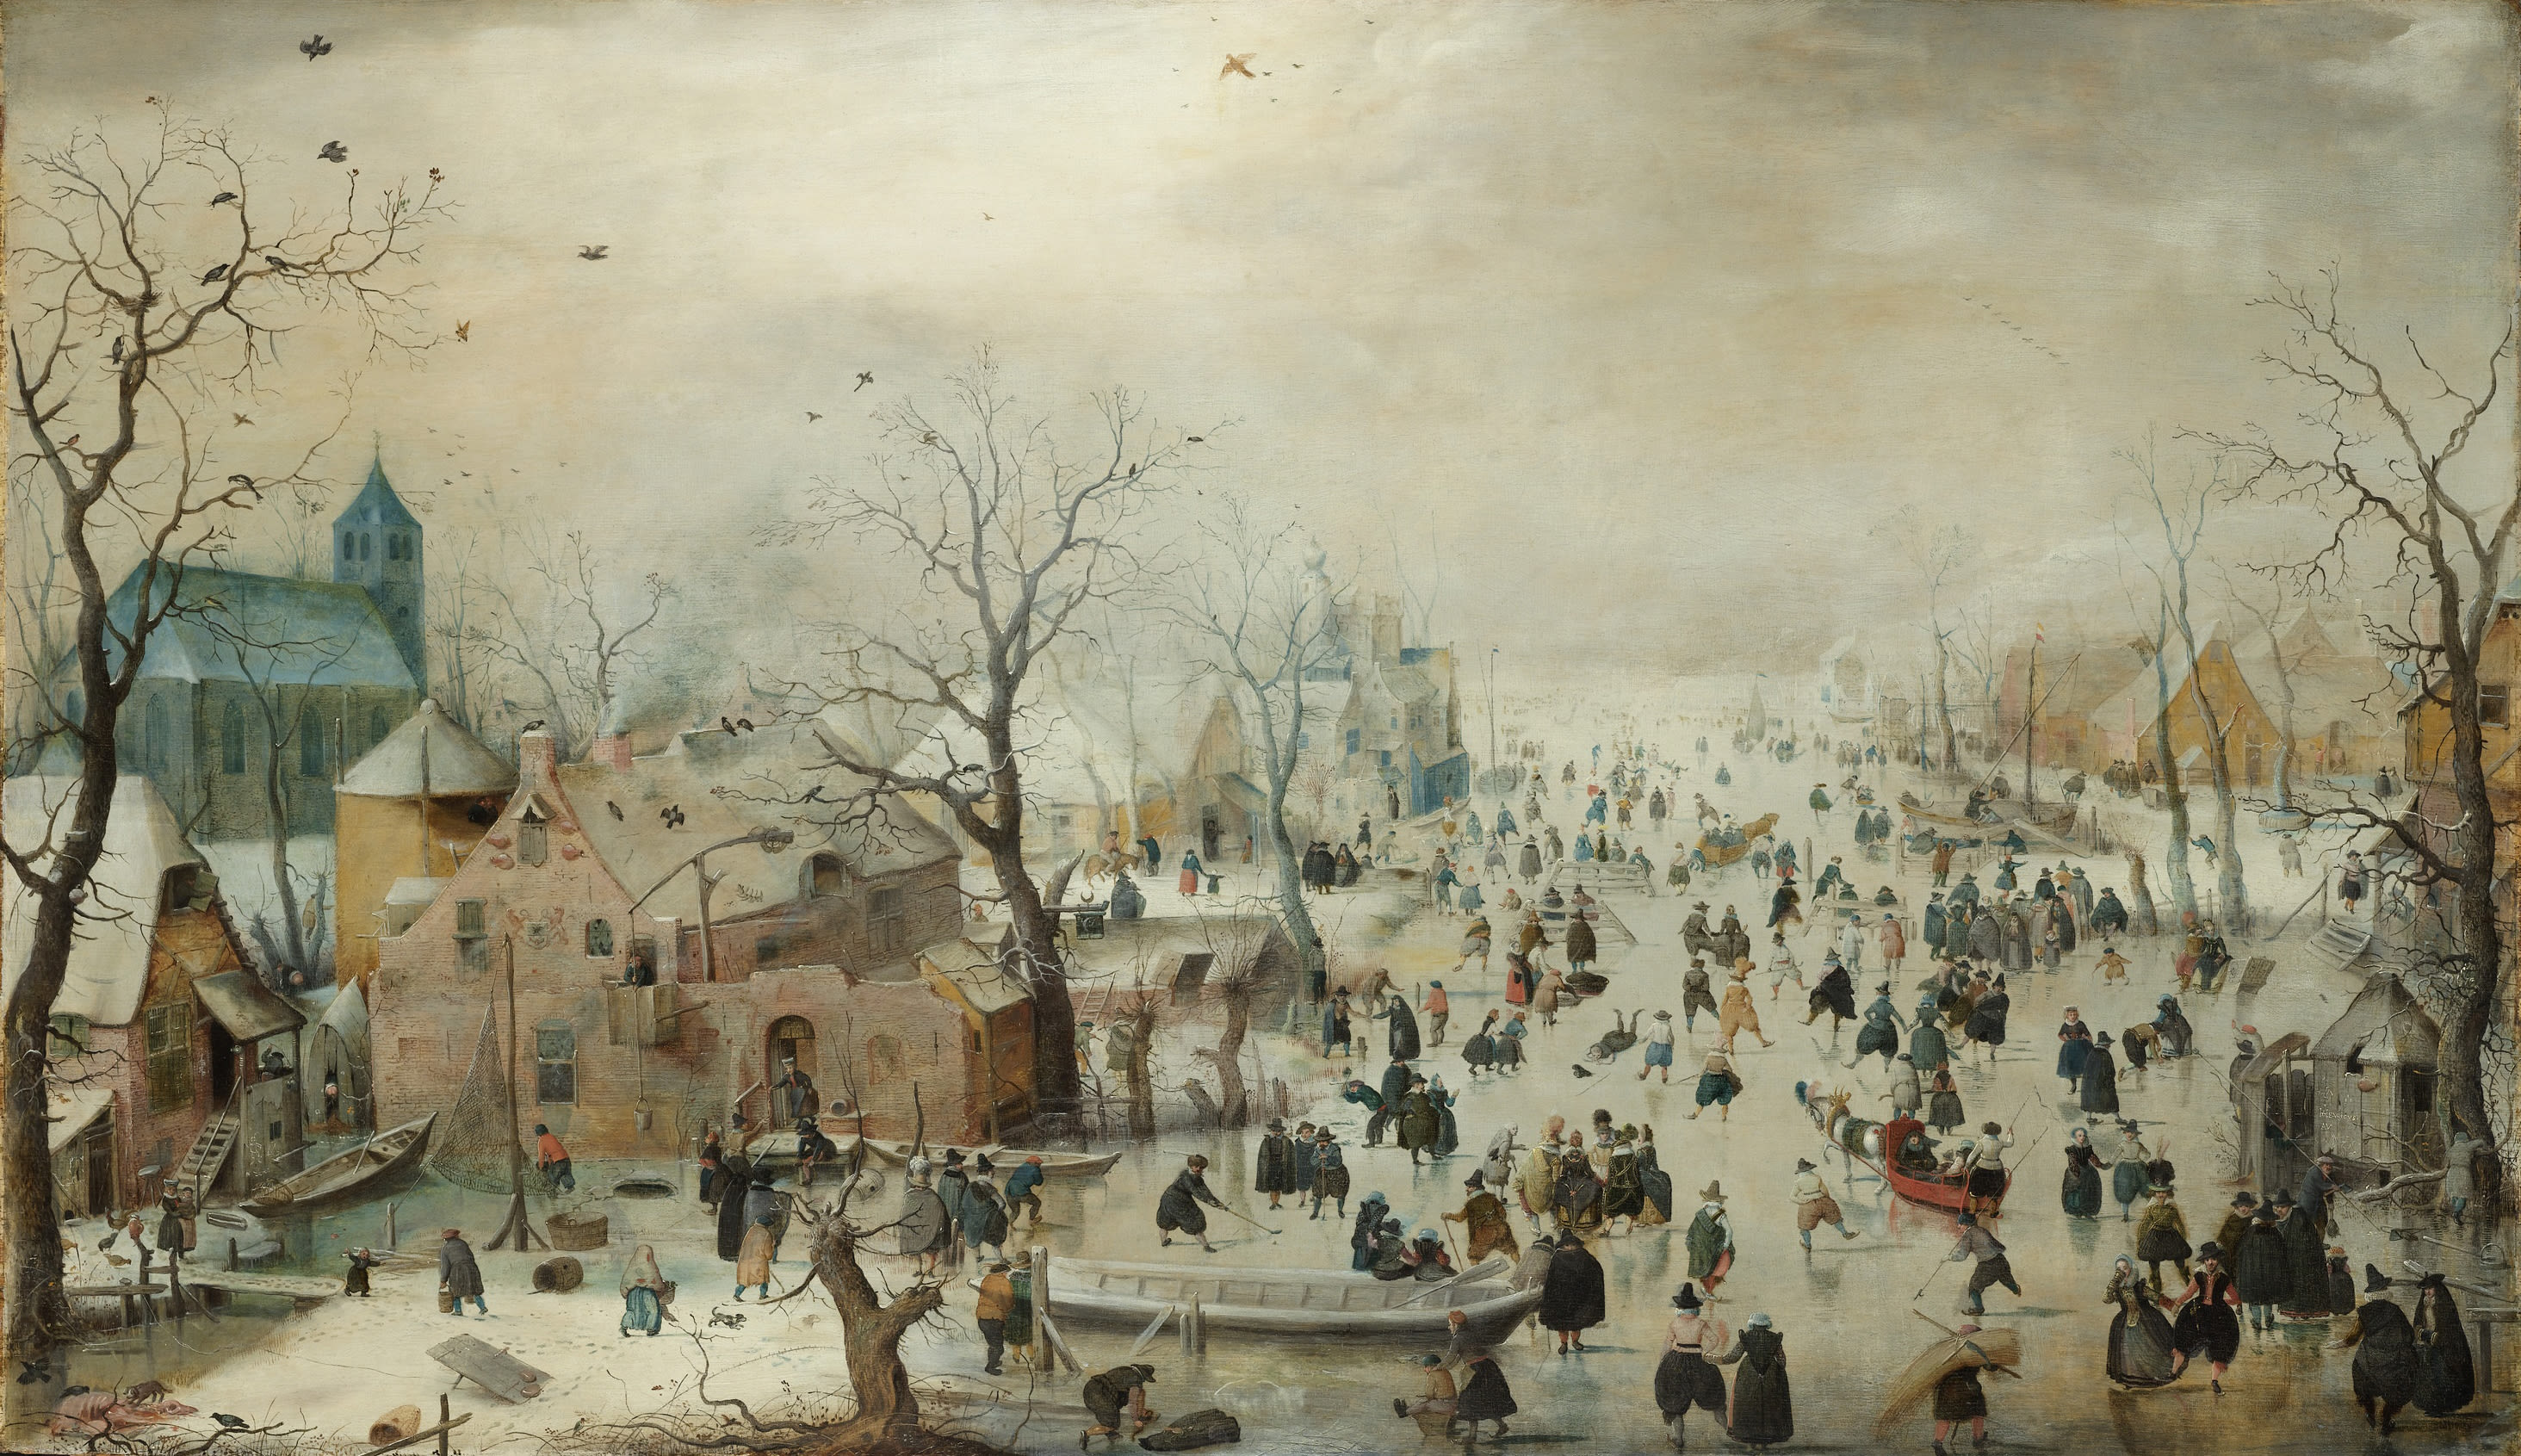 pintura, multidões de pessoas a patinar no gelo entre árvores e casas.